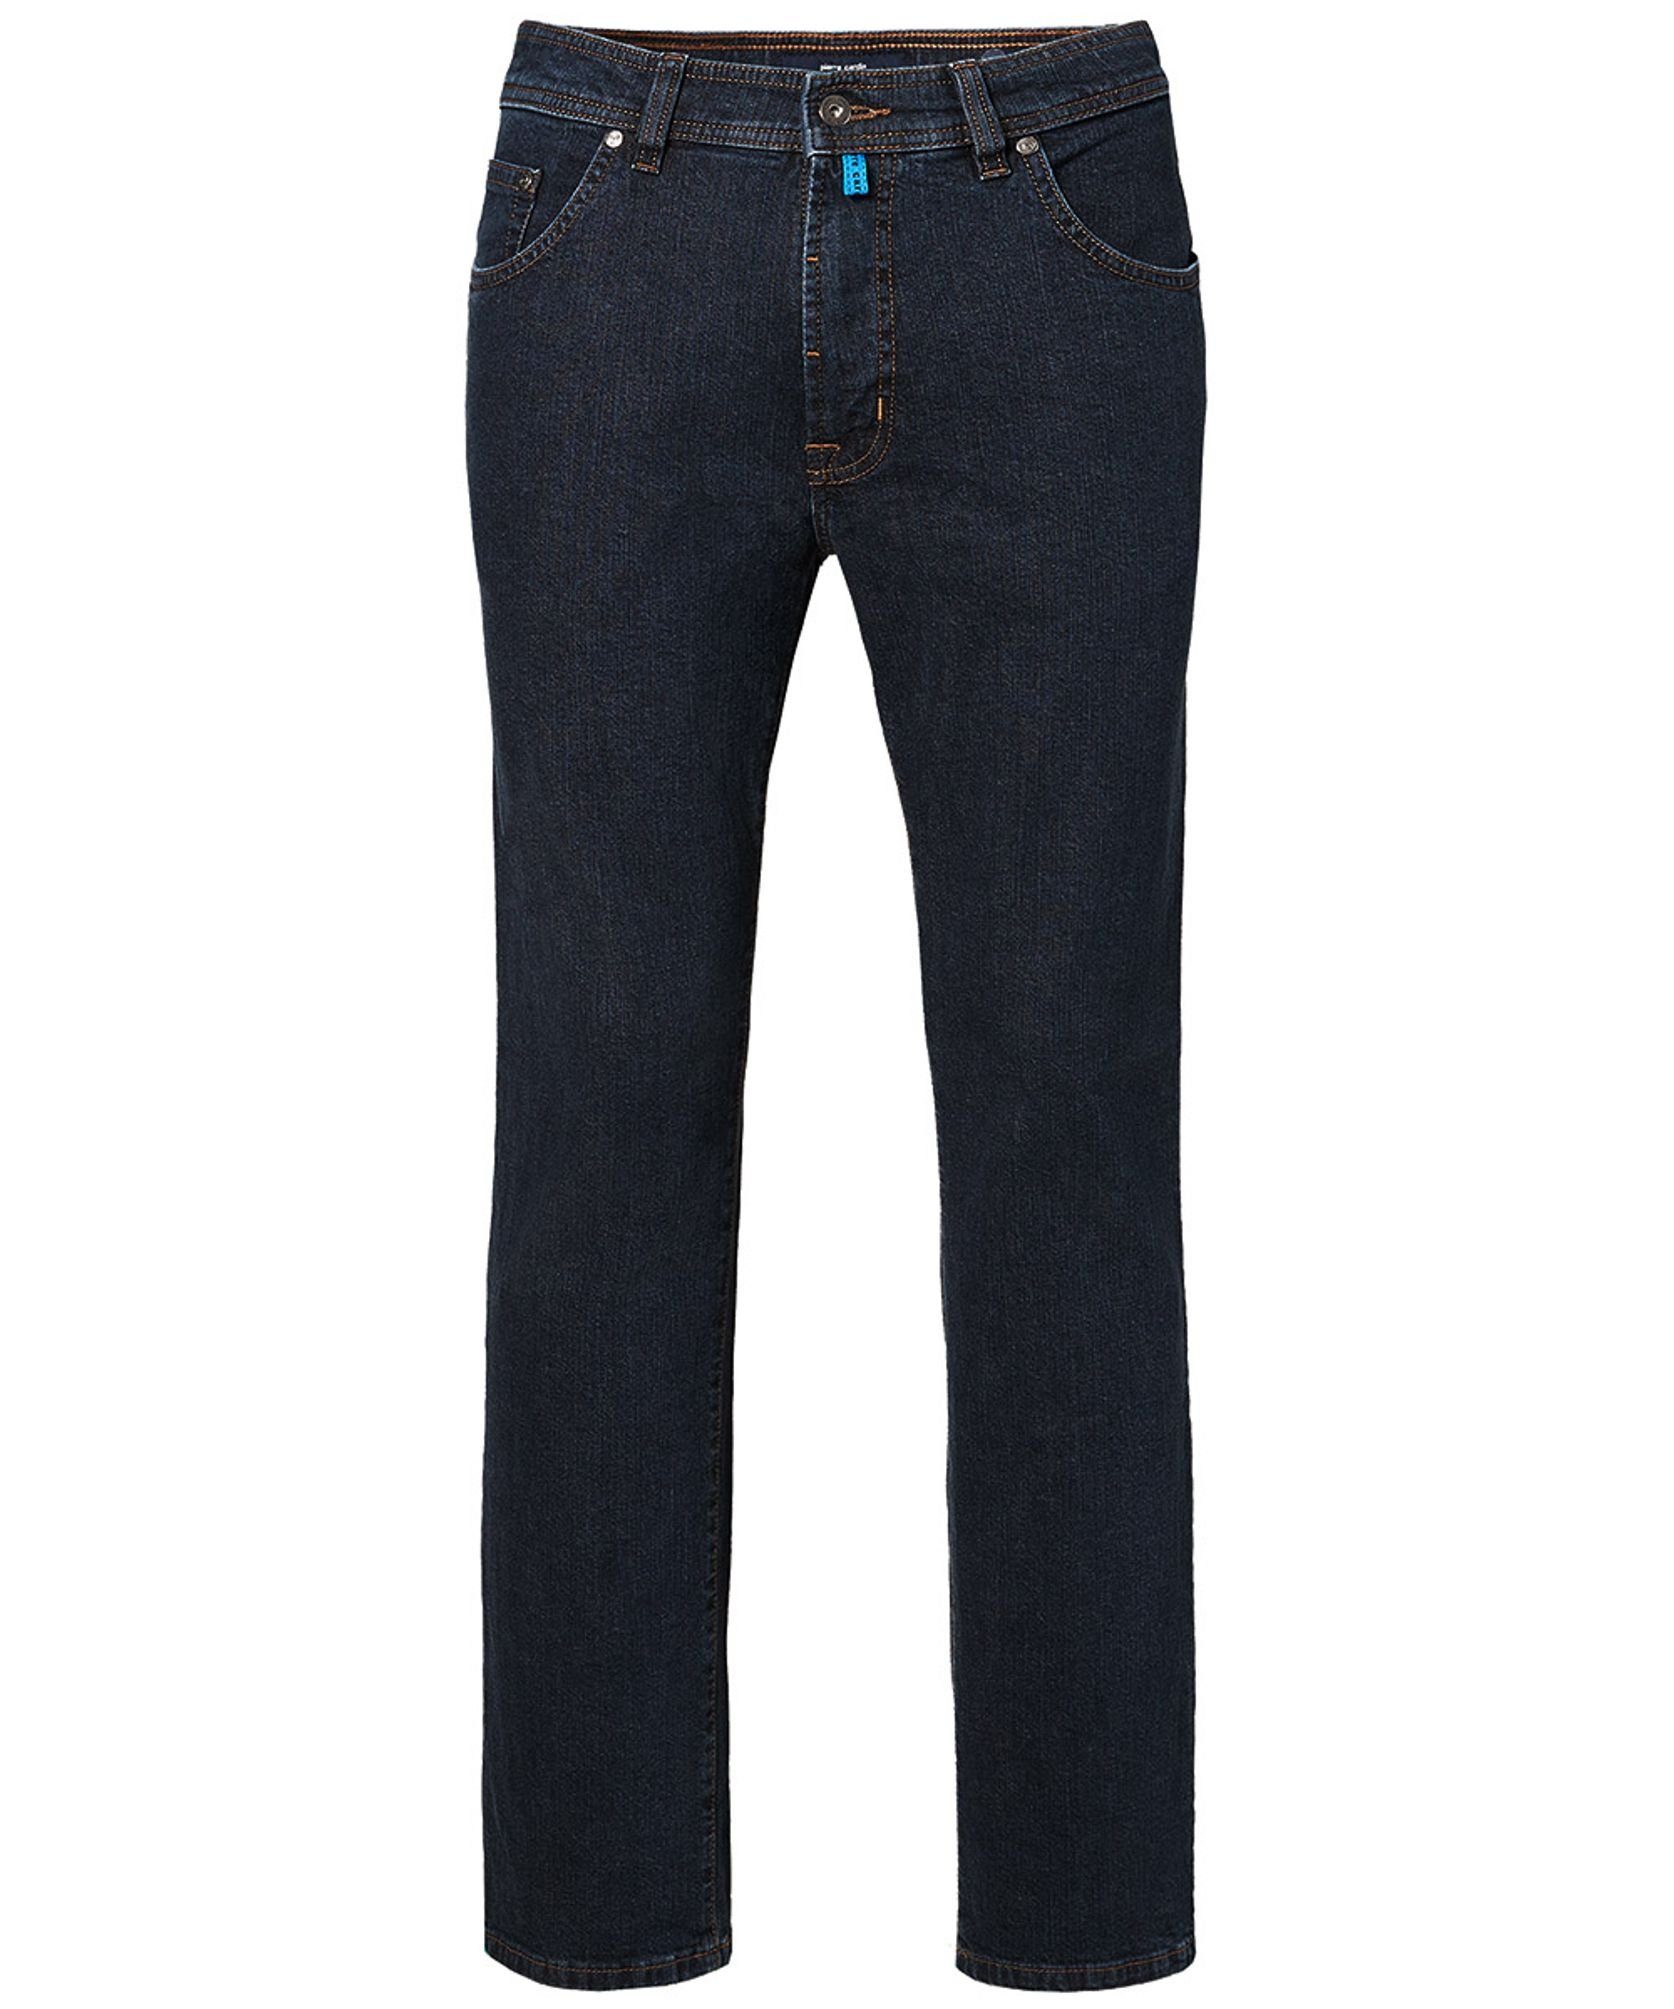 C7 5-Pocket-Jeans Pierre Cardin 32310.7003